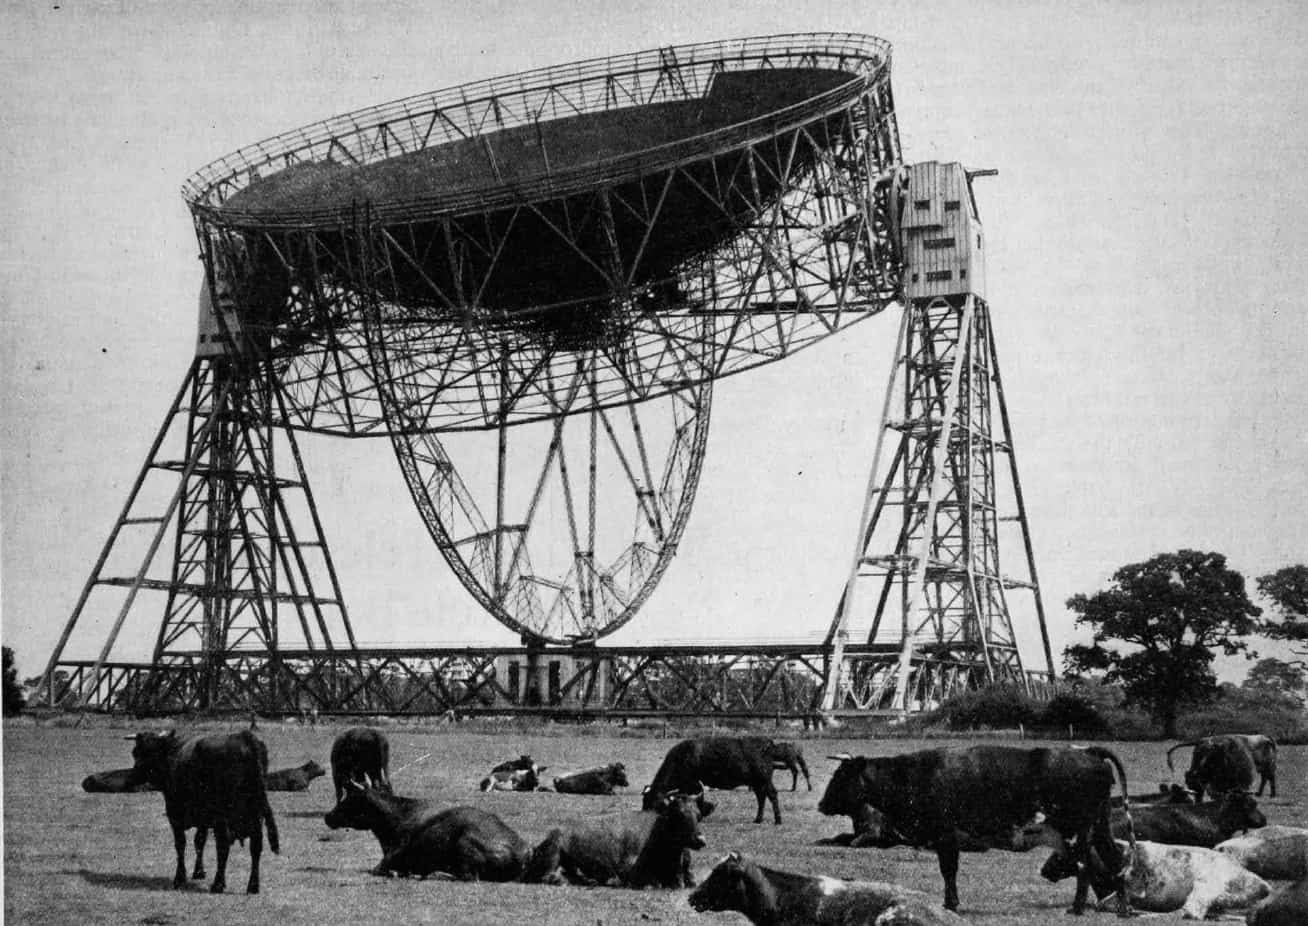 The Lovell Telescope in 1957